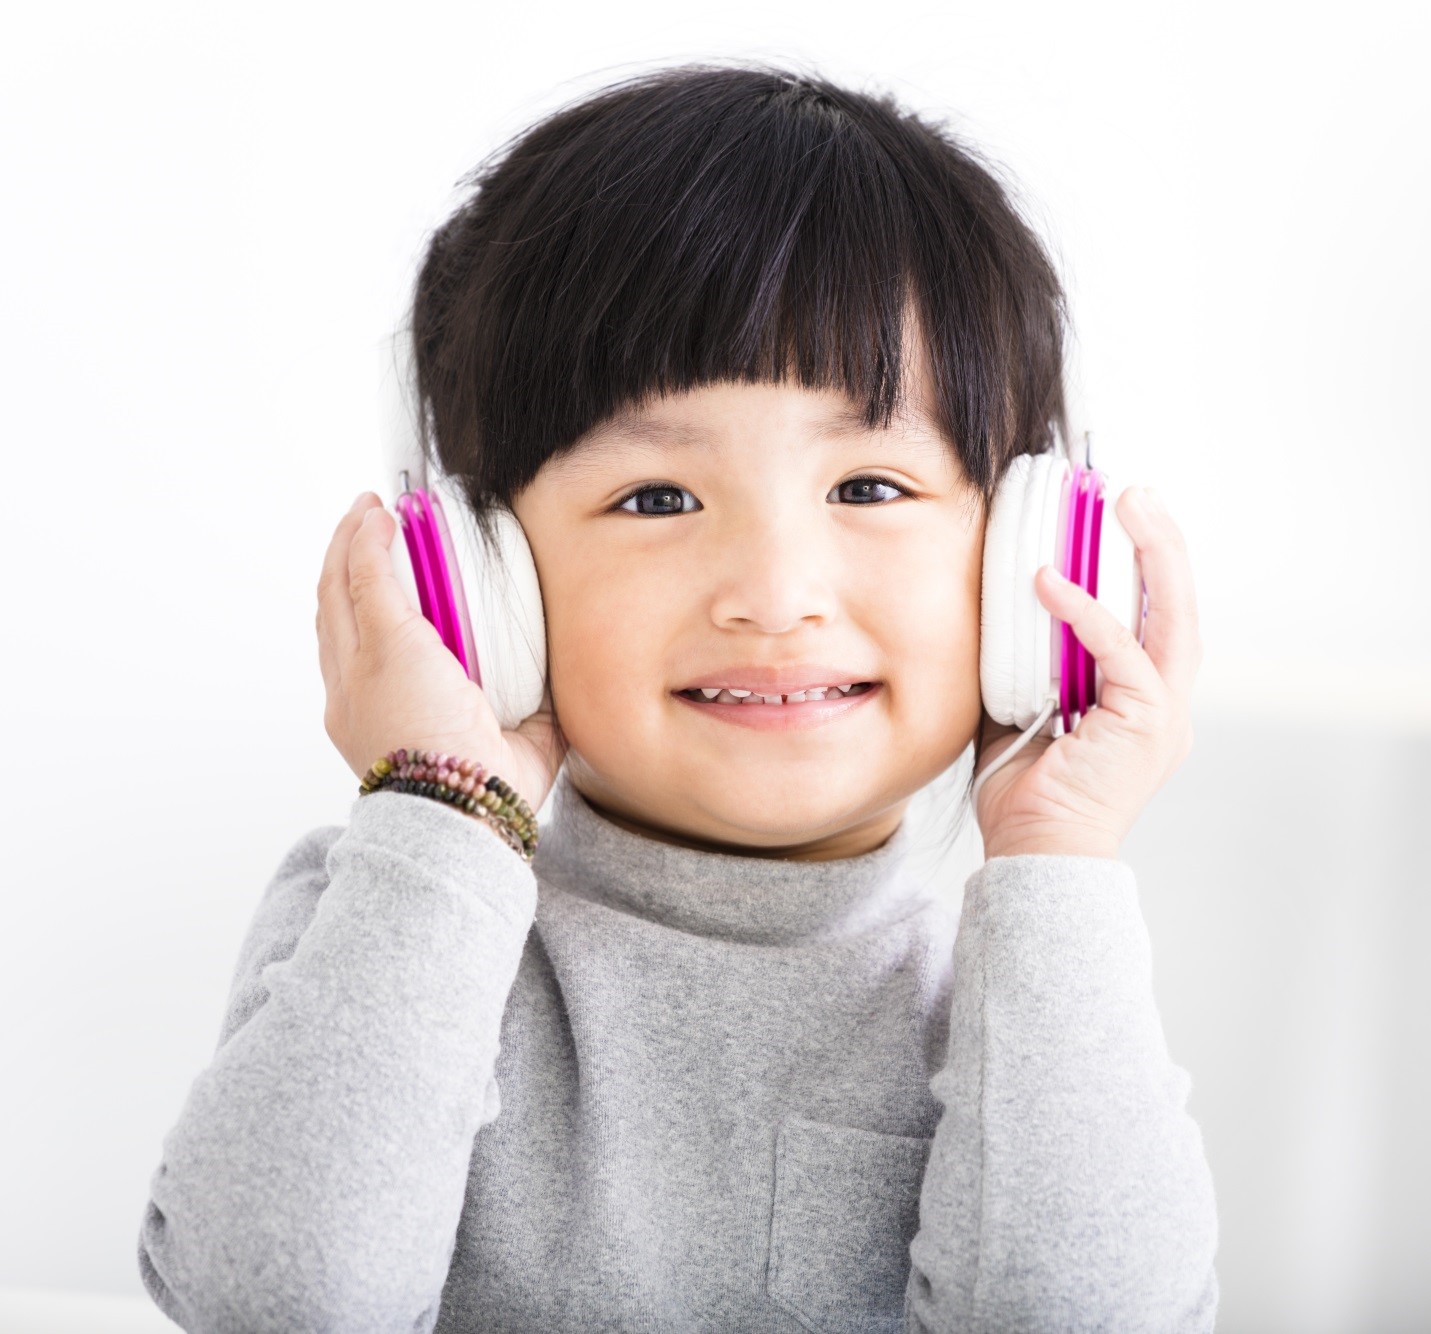 Nghe nhạc sẽ giúp bổ sung vốn từ vựng cho bé